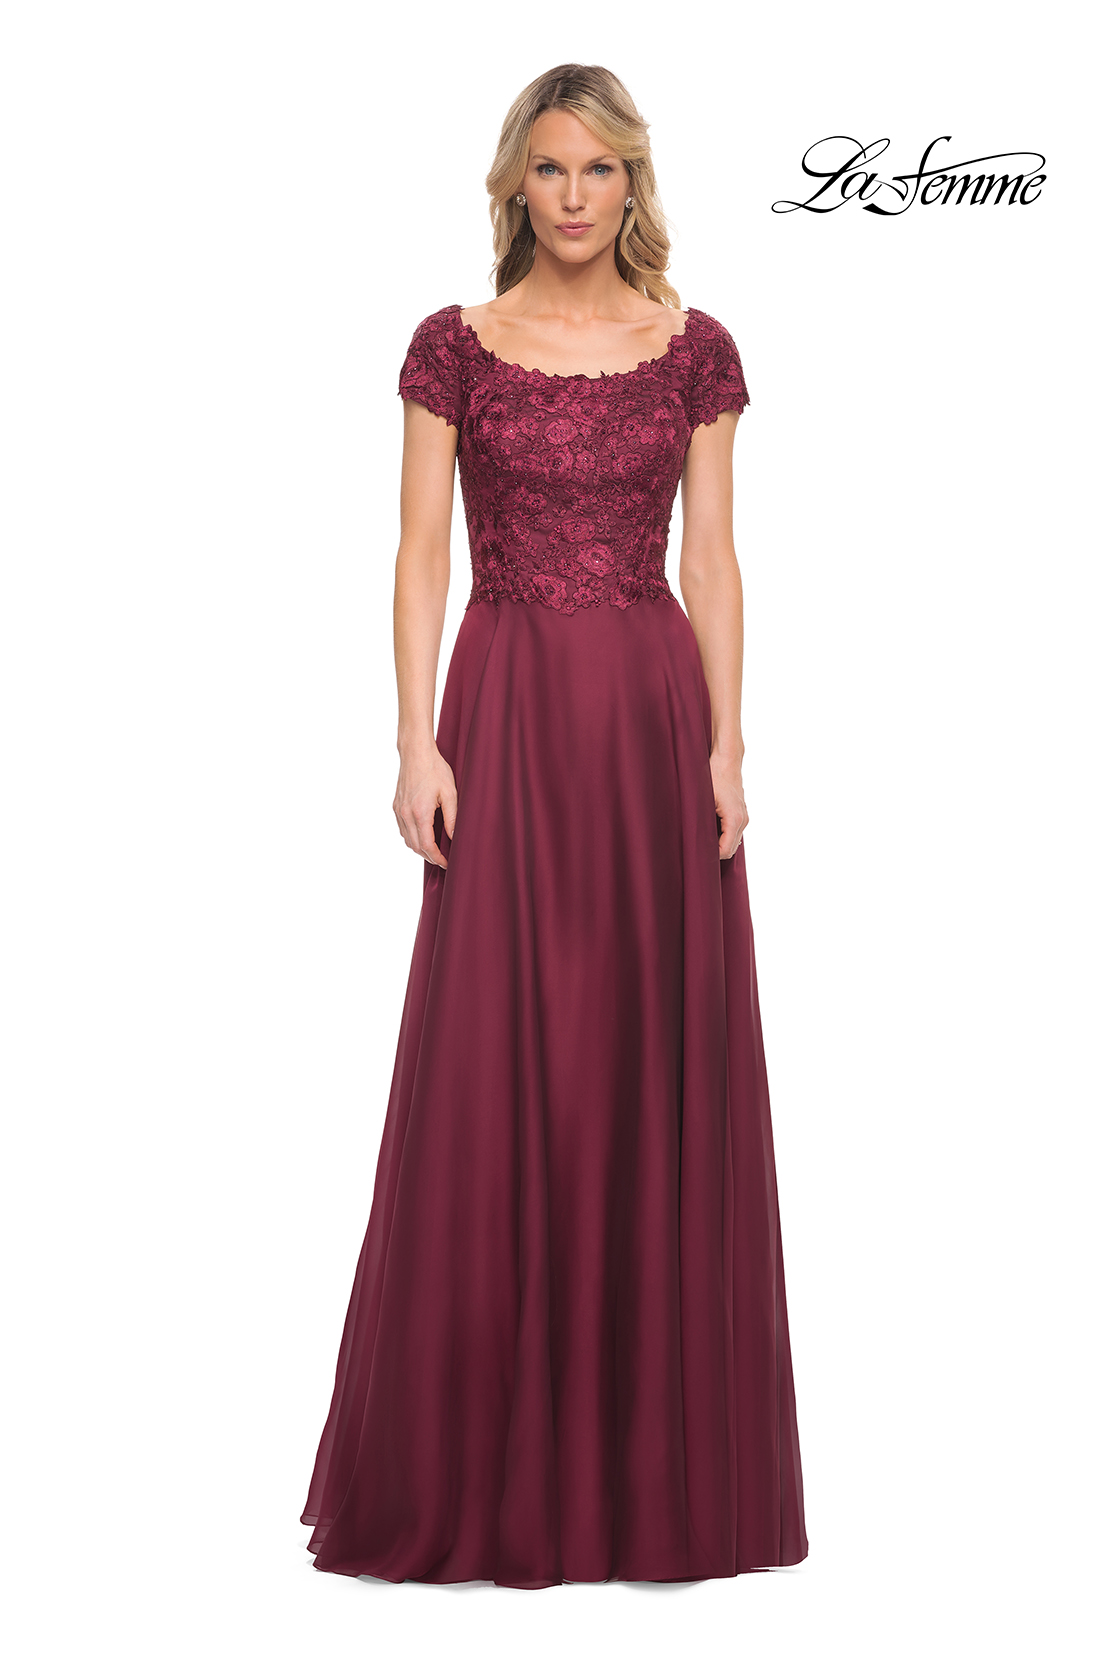 La Femme Mother of the Bride Dress Style #26550 | La Femme